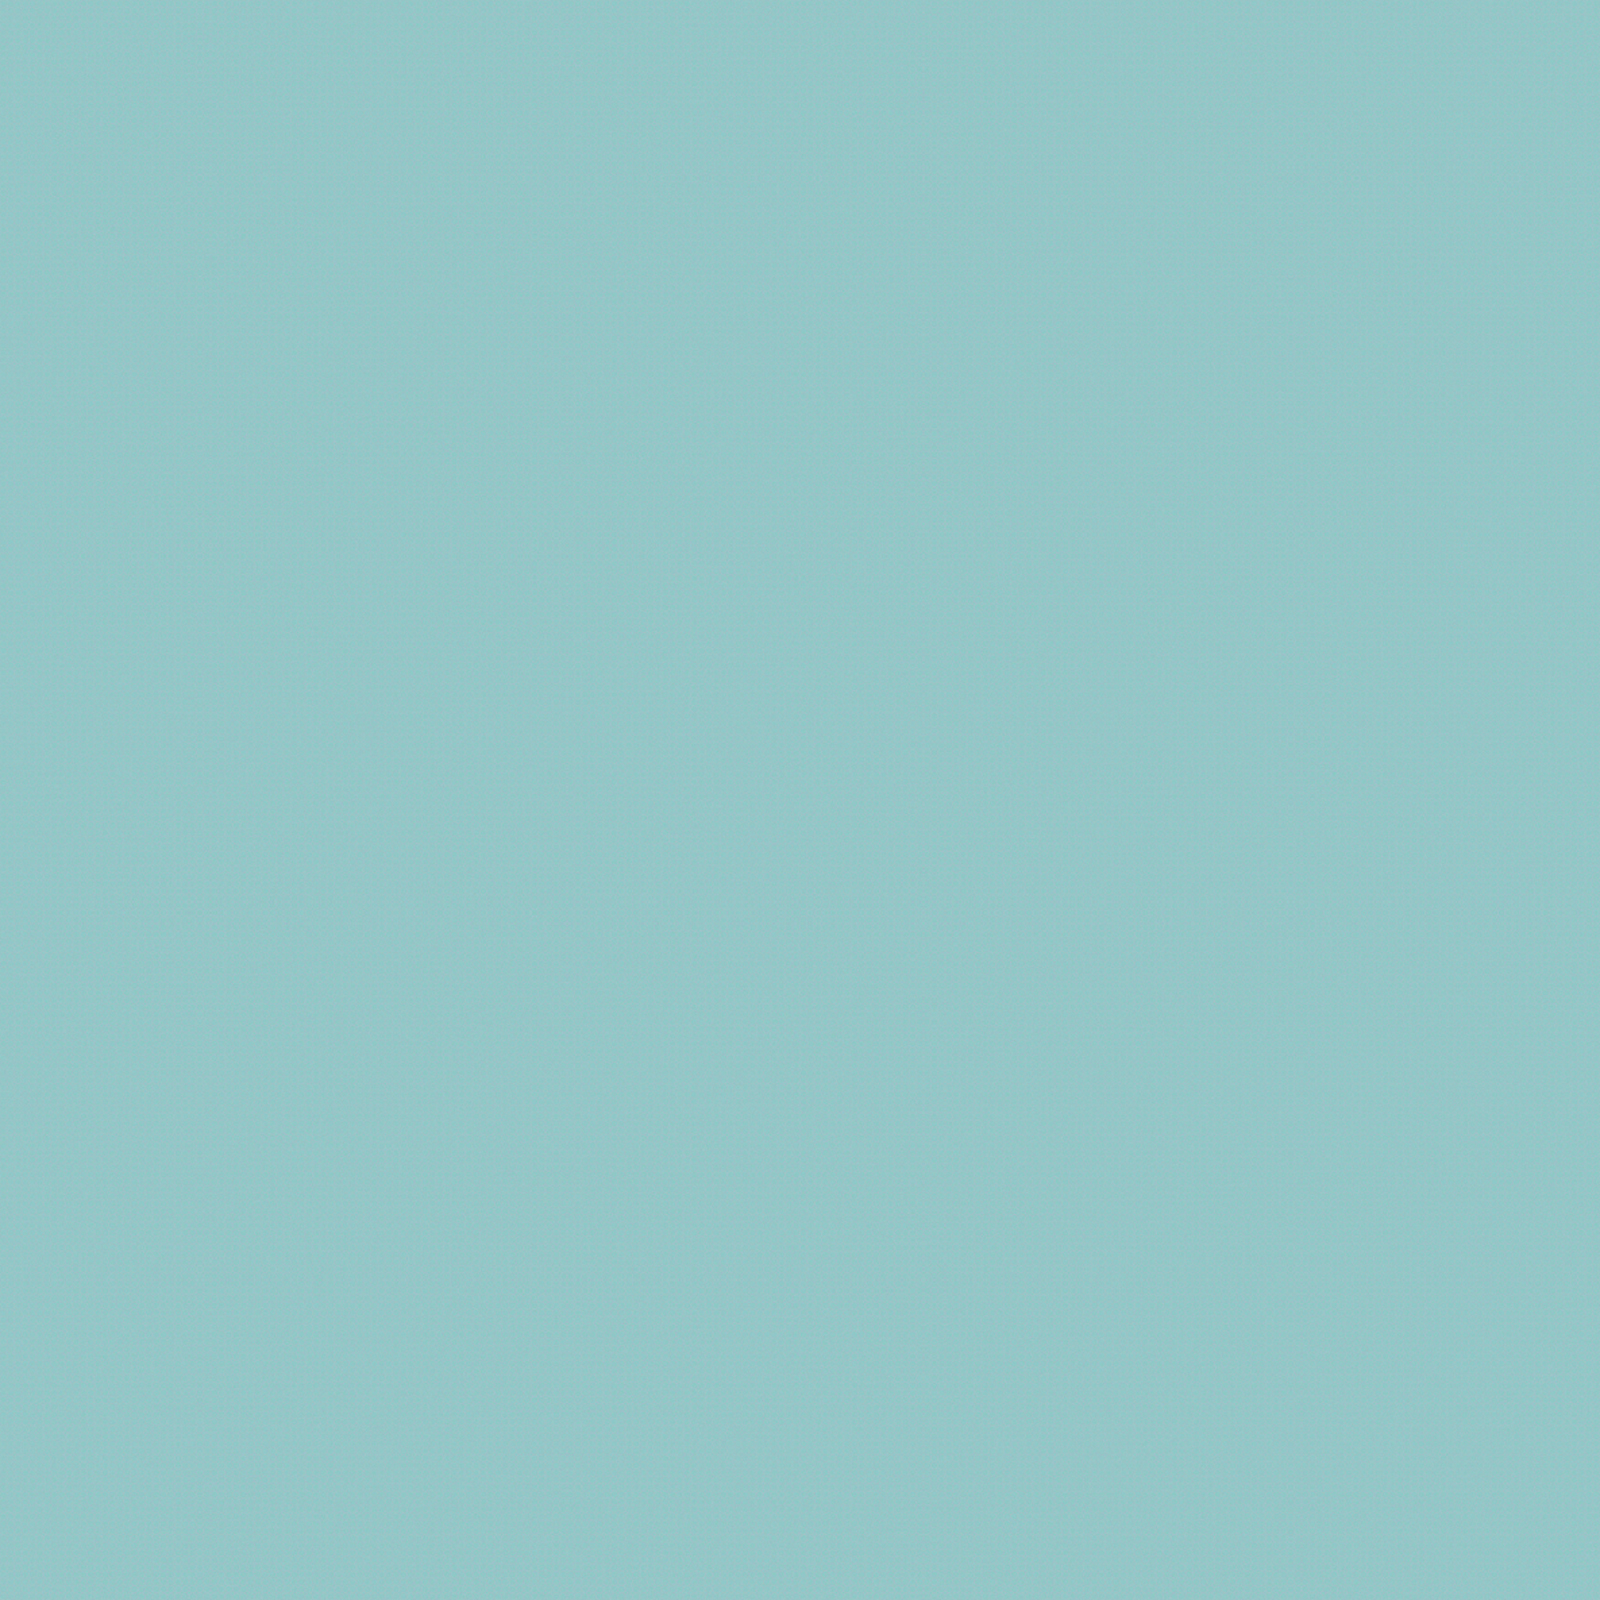 Керамическая плитка Luster Aquamarin FT3LST16 Керамогранит 410x410 (11 шт в уп/74 м в пал) / коллекция Rainfall AltaCera Fluence AltaCera / производитель AltaCera / страна Россия